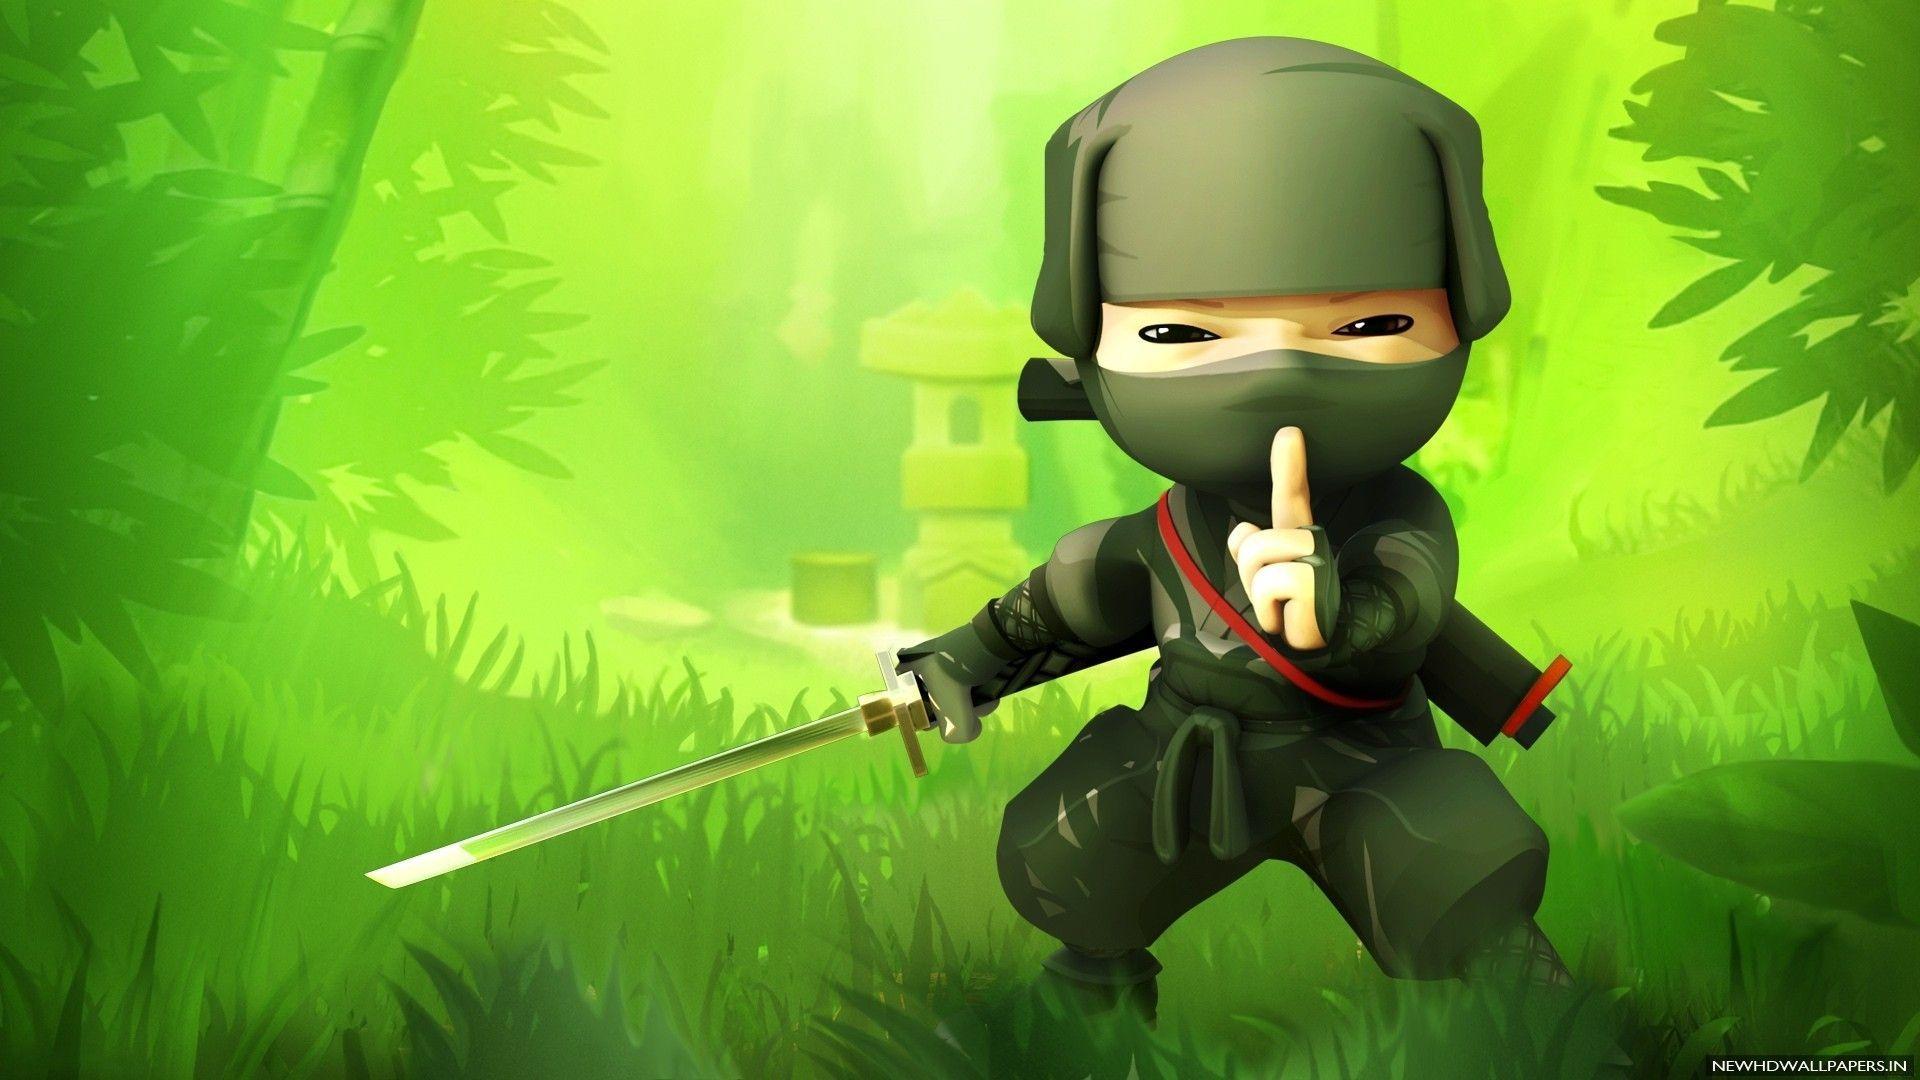 Hình nền hình minh họa trò chơi điện tử Đánh dấu của Ninja Ảnh chụp màn hình Hình nền máy tính 2560x1440 izmirli 104142 Hình nền đẹp hd WallHere